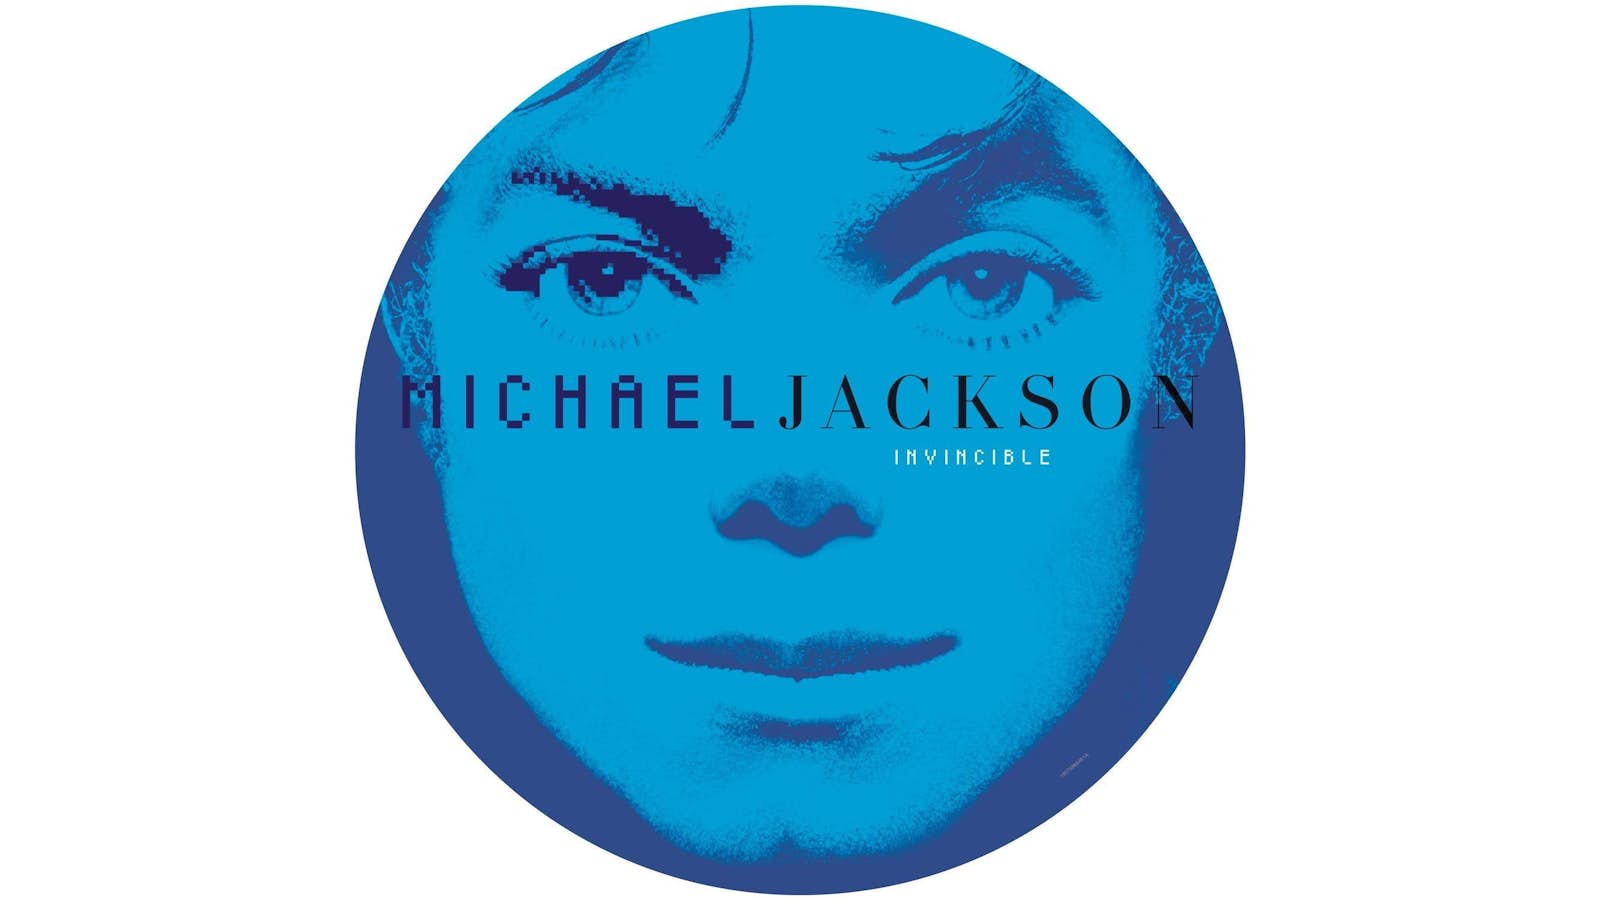 Michael Jackson Invincible - Vinilo